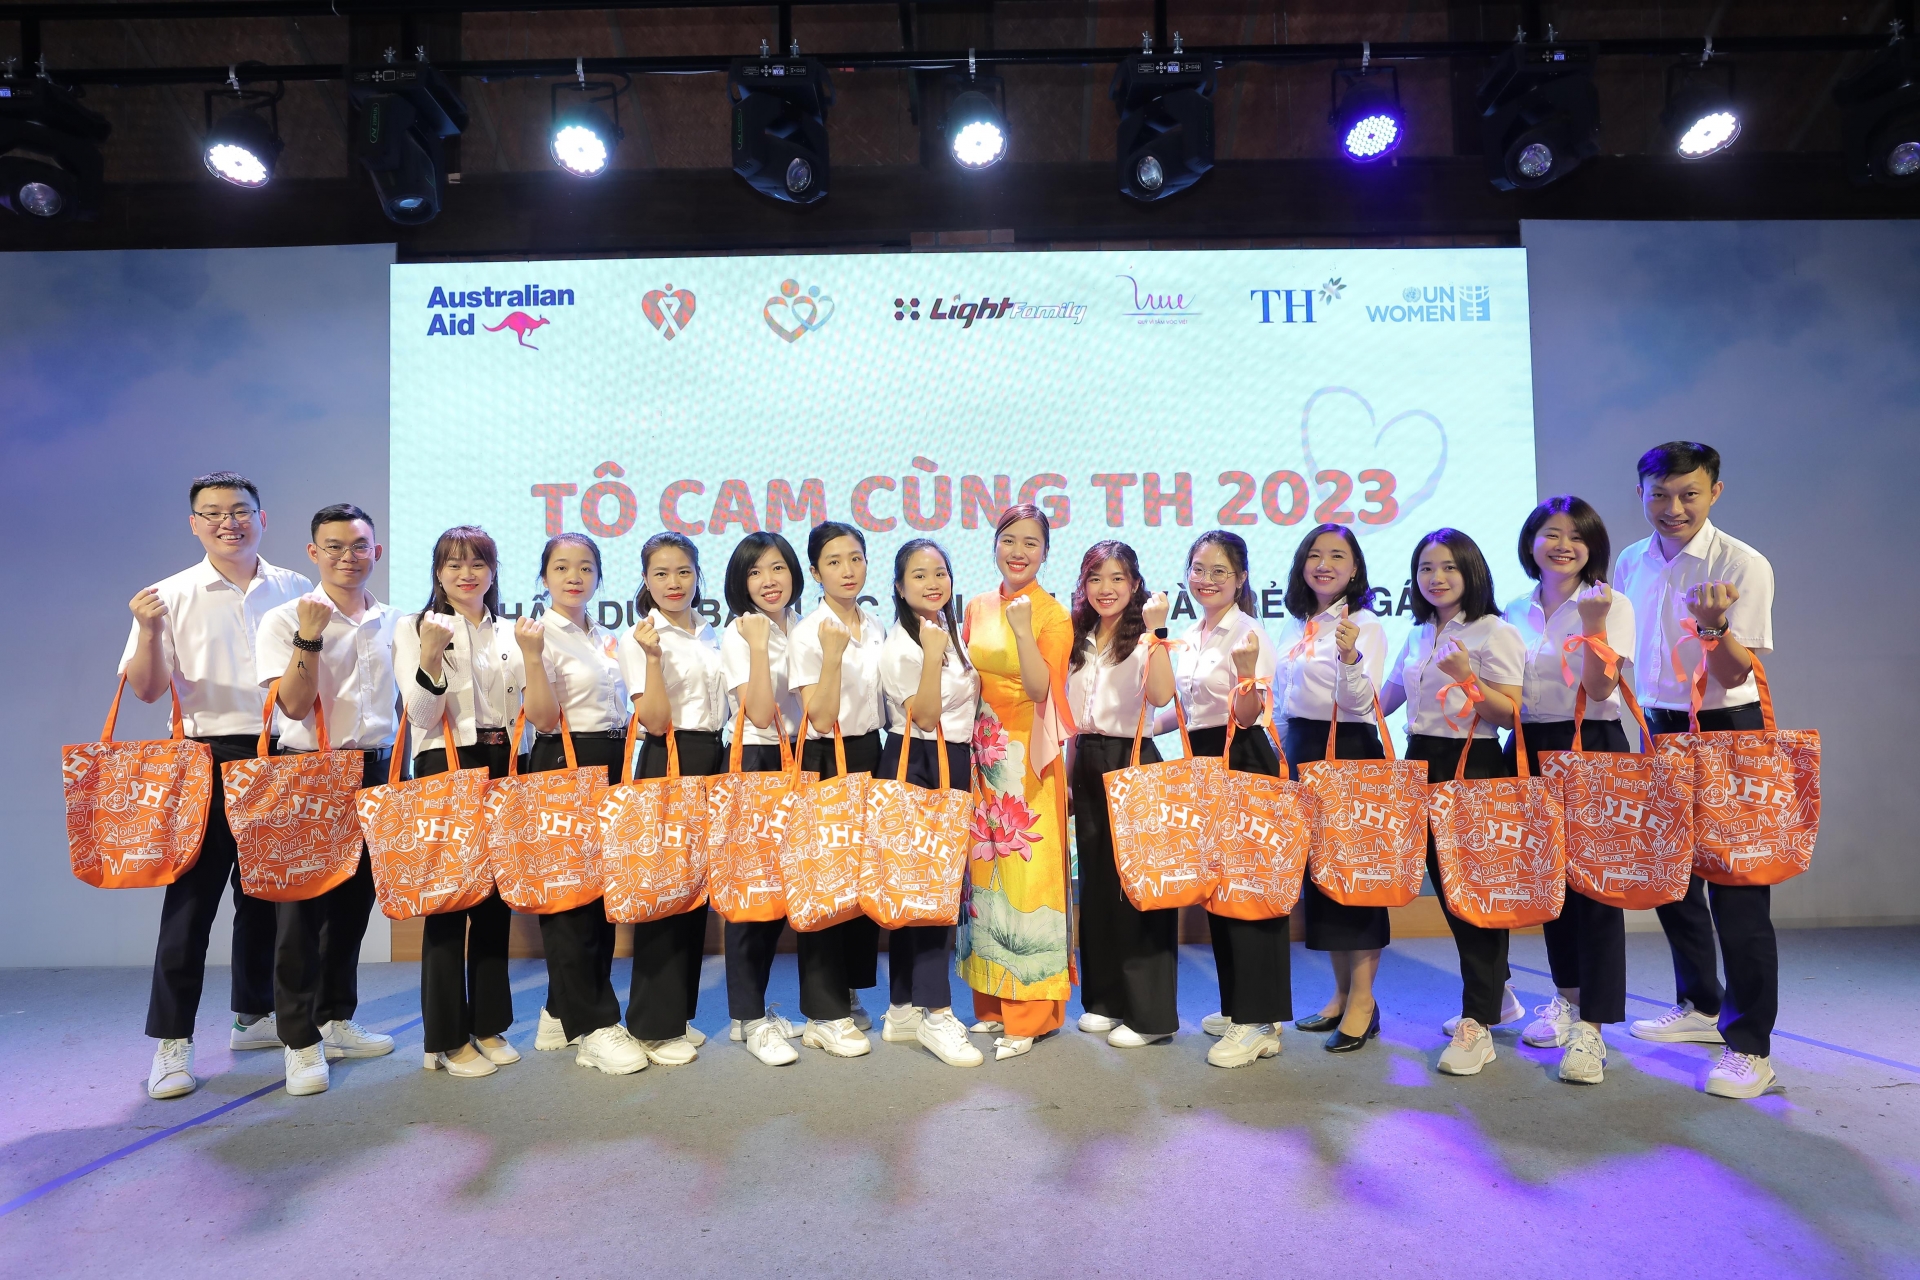 Tô cam cùng TH 2023 - Chung tay vì hạnh phúc đích thực của phụ nữ và trẻ em Việt Nam